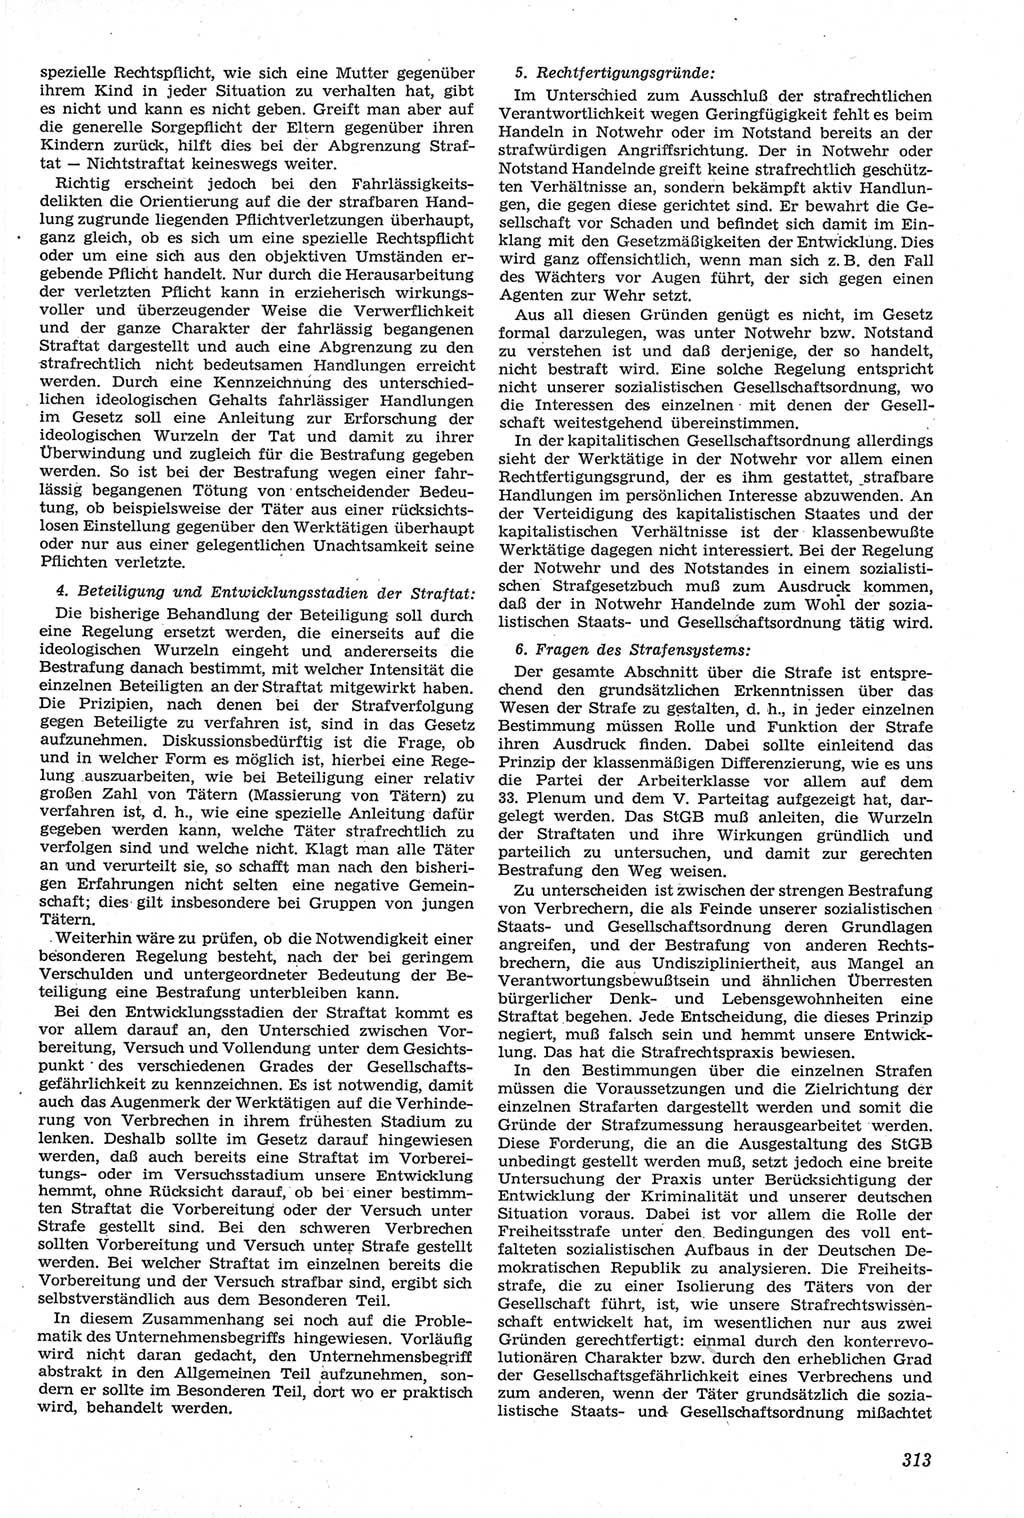 Neue Justiz (NJ), Zeitschrift für Recht und Rechtswissenschaft [Deutsche Demokratische Republik (DDR)], 14. Jahrgang 1960, Seite 313 (NJ DDR 1960, S. 313)